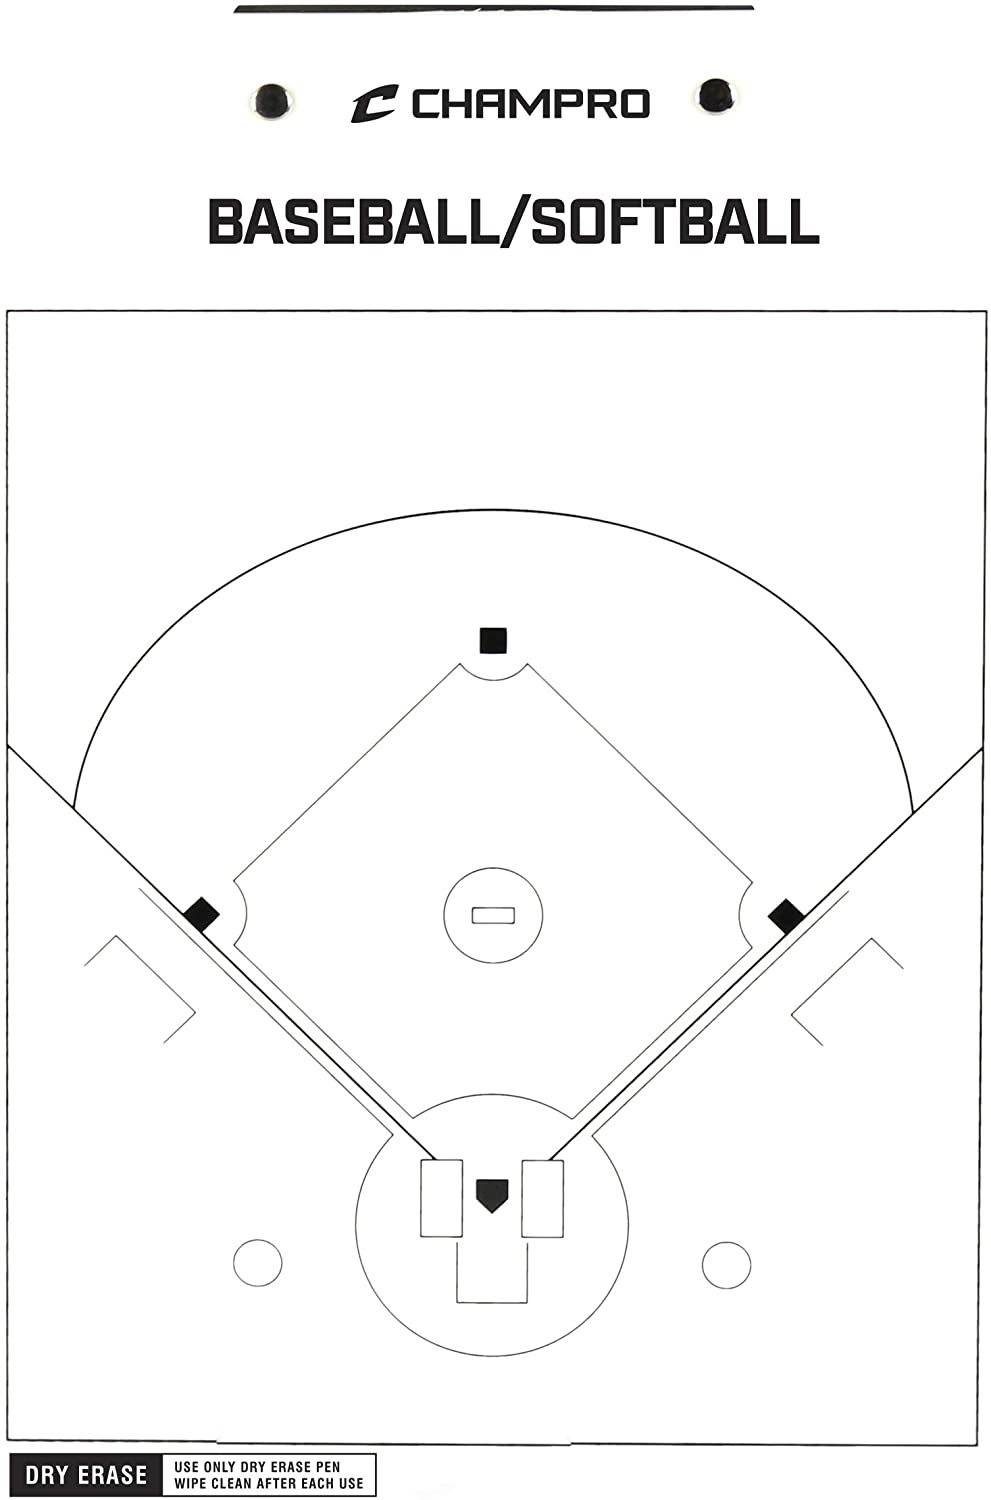 Champro 9" X 12" Baseball/Softball Coach's Board - CMD Sports